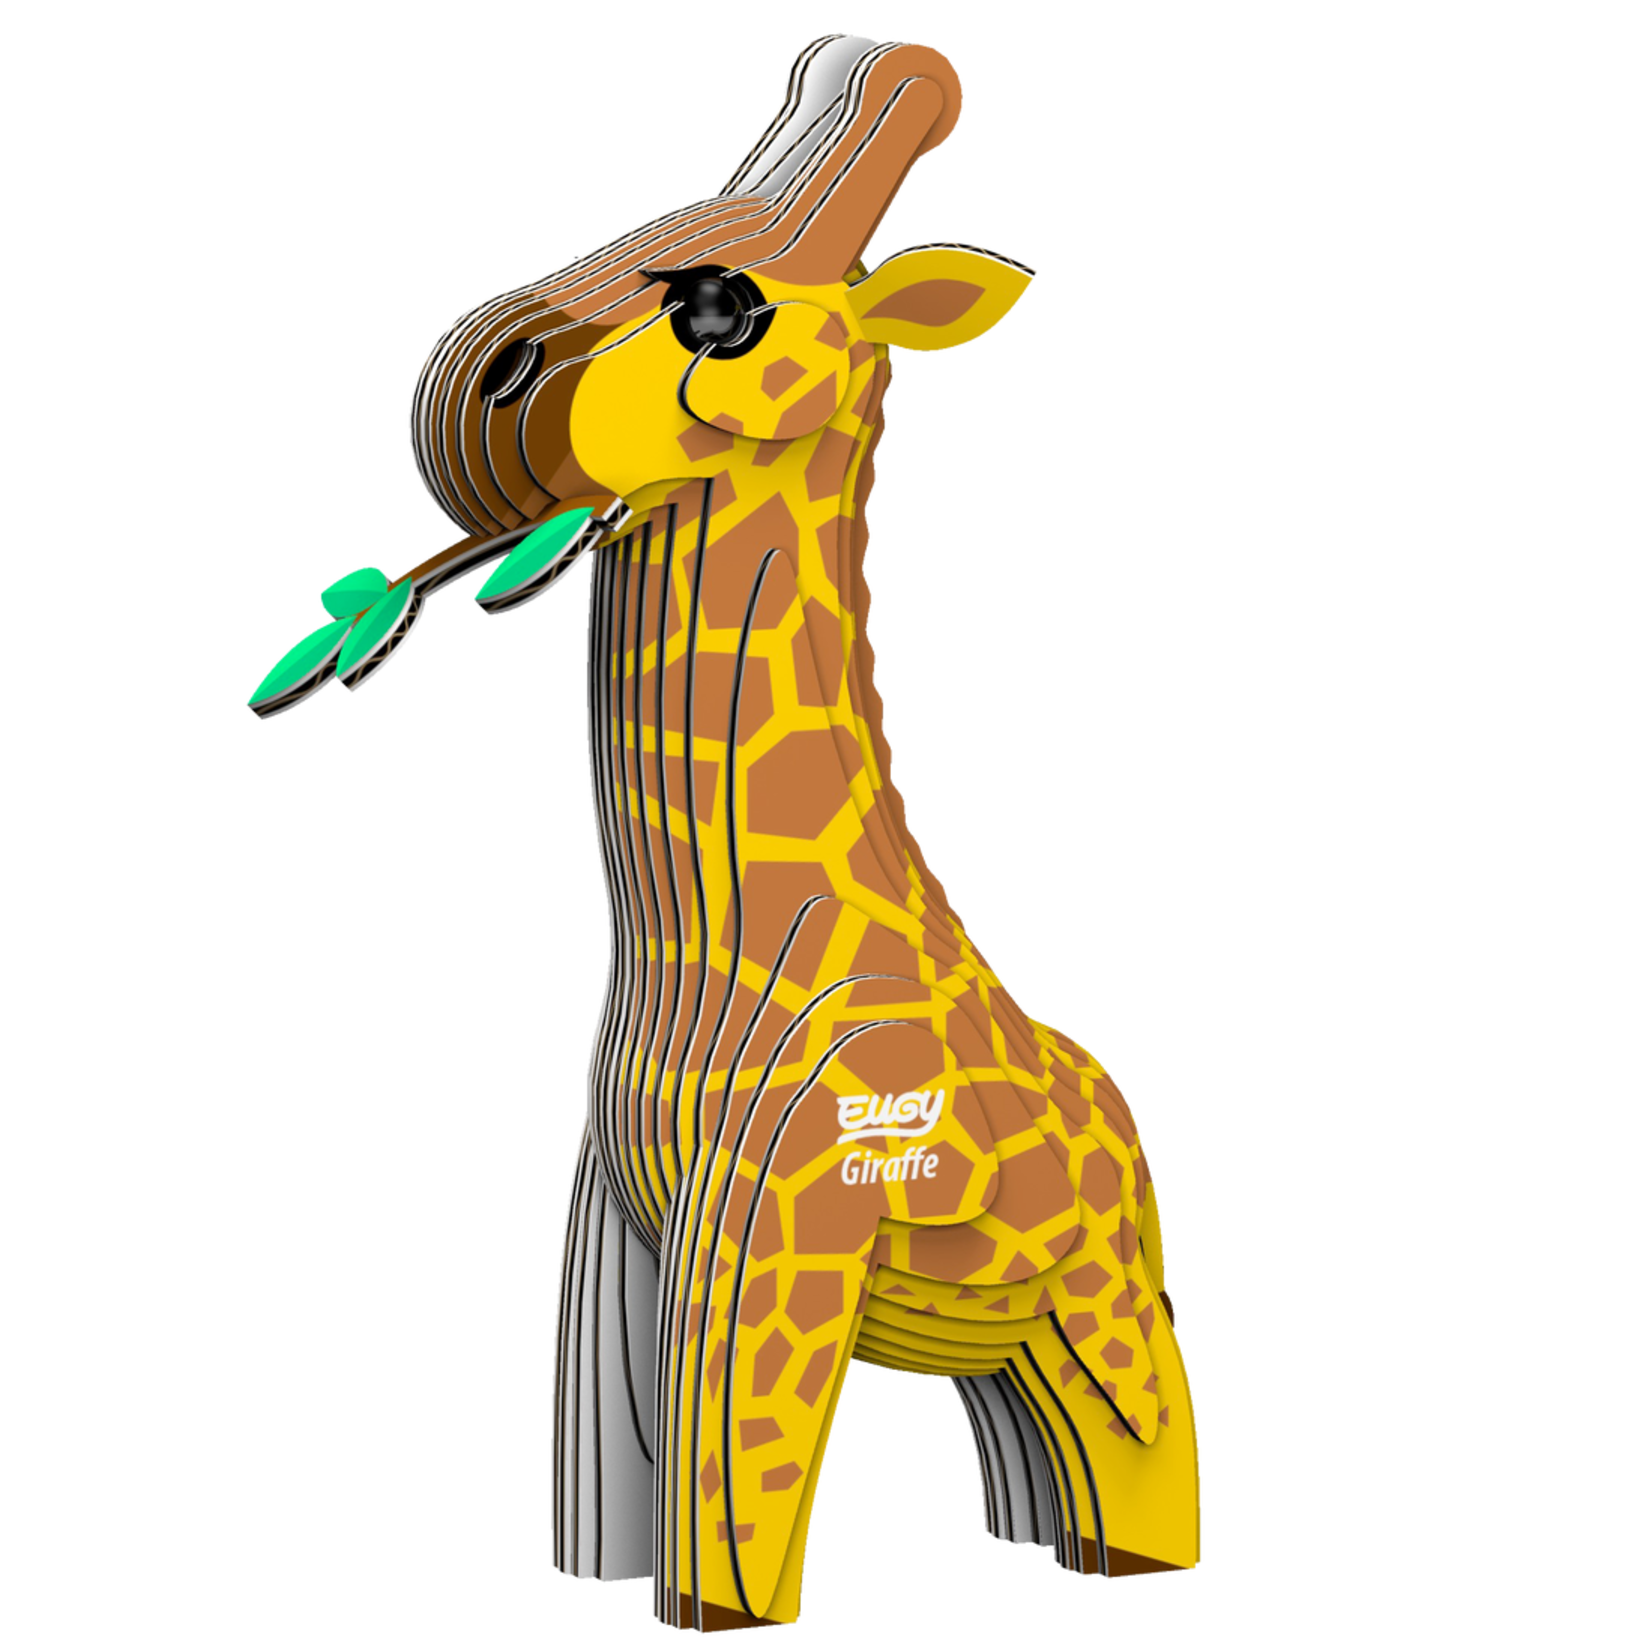 eugy giraffe puzzle